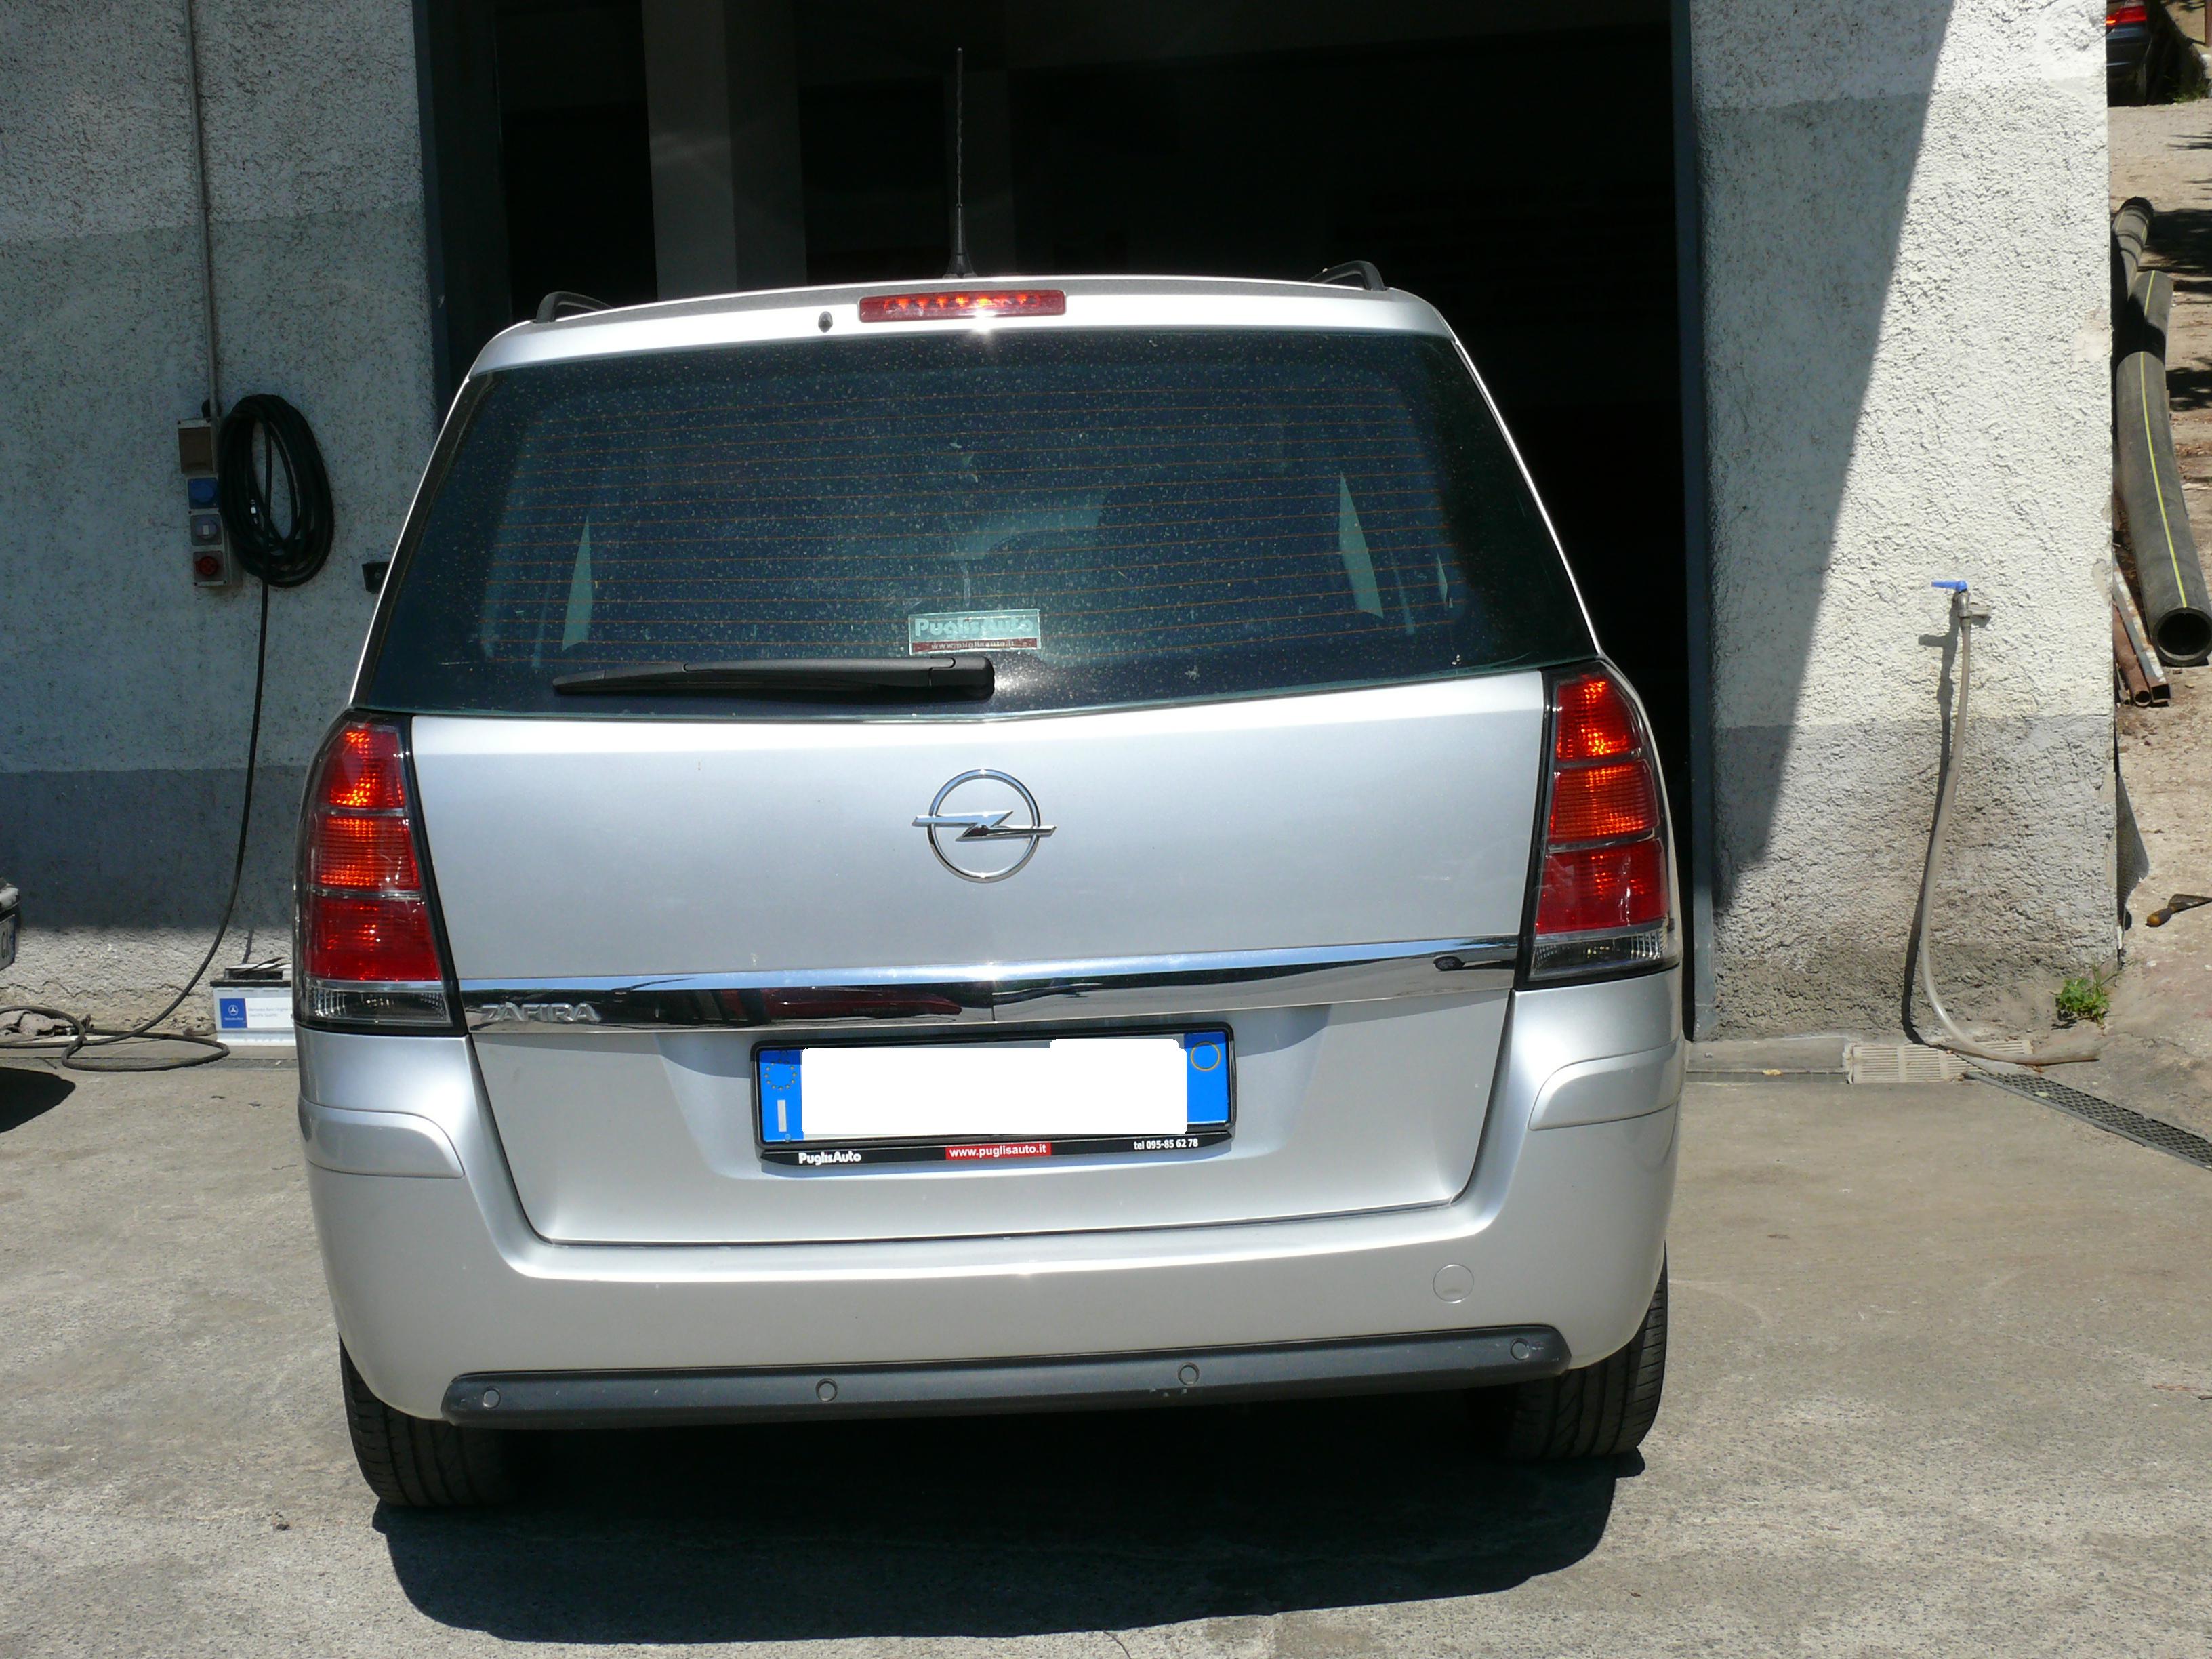 Opel Zafira minivan model